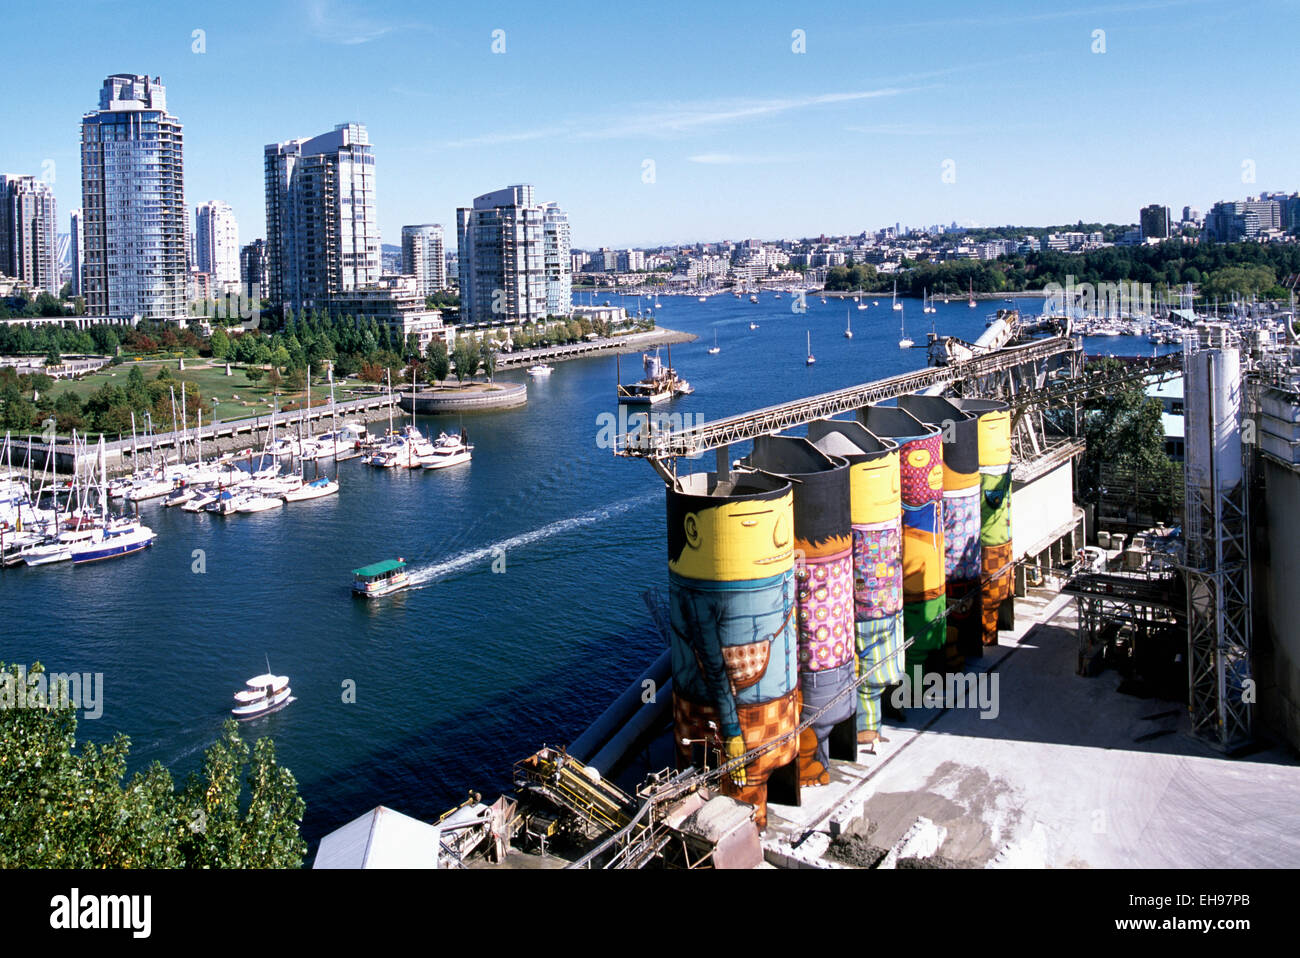 Mit Blick auf False Creek und Granville Island, Vancouver, Britisch-Kolumbien, Kanada - "Riesen" Kunst im öffentlichen Raum auf Betonsilo gemalt Stockfoto